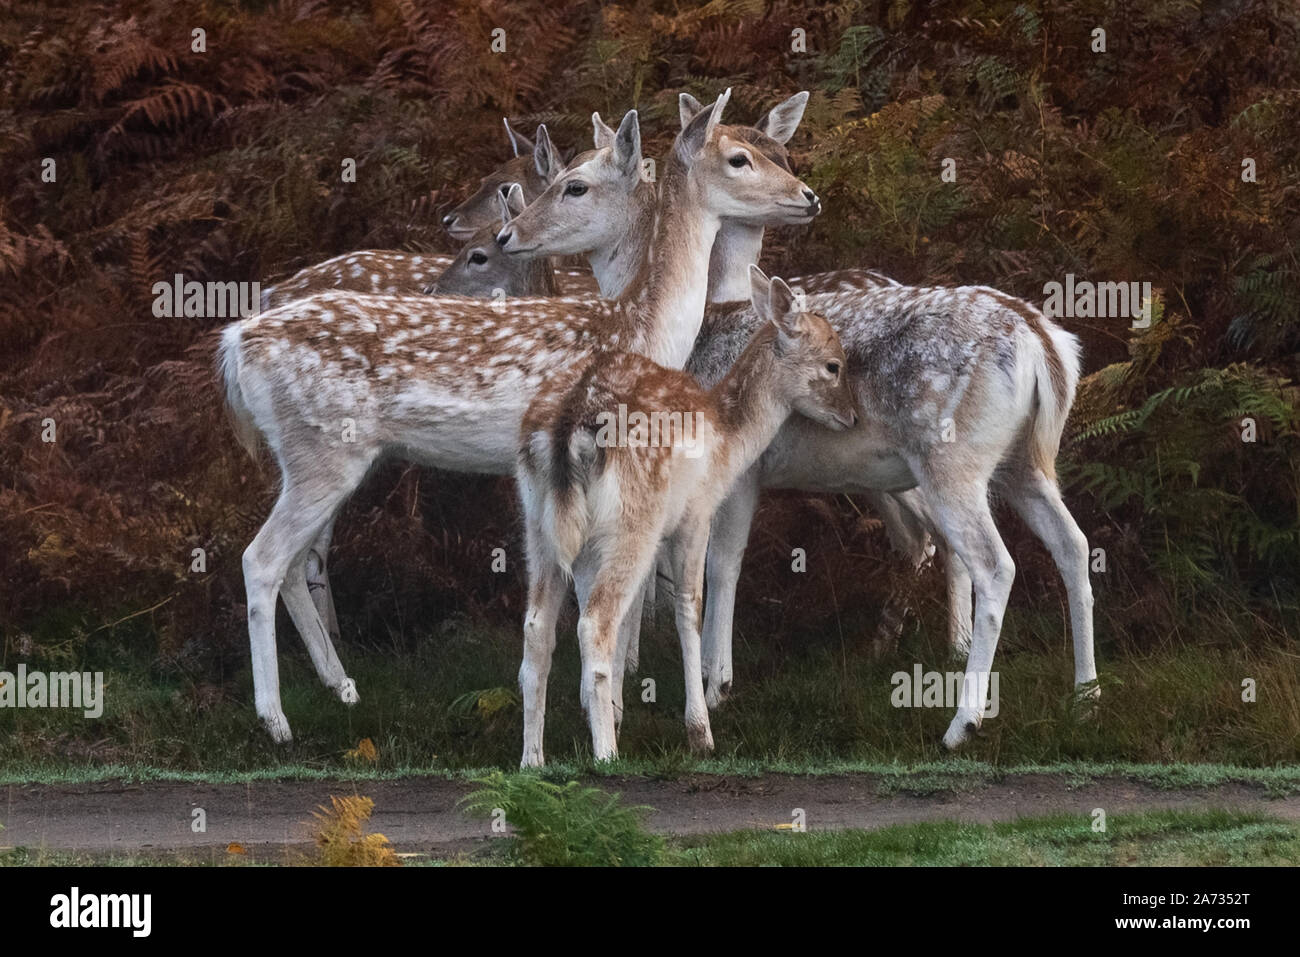 Gruppo di cerve (cervo femmina) con un fauno visto in Richmond Park, dove oltre 600 cervi girovagano liberamente. Londra, Regno Unito. Foto Stock